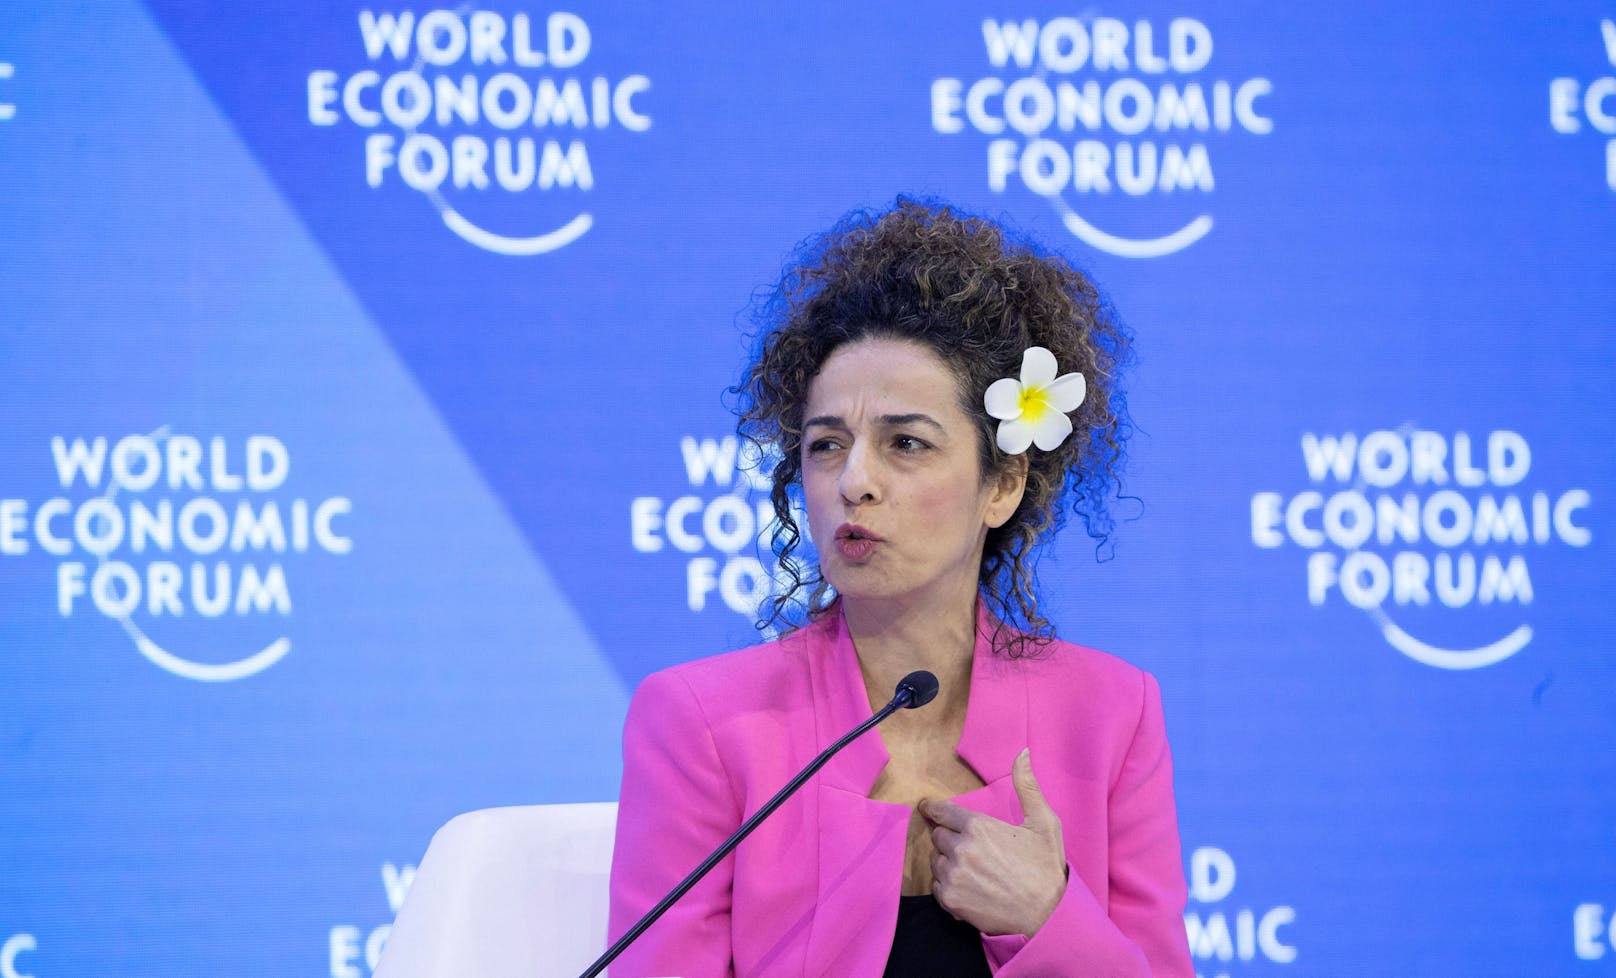 Masih Alinejad (46) ist eine iranisch-amerikanische Journalistin und Menschenrechtlerin. Sie nahm dieses Jahr am WEF in Davos teil.